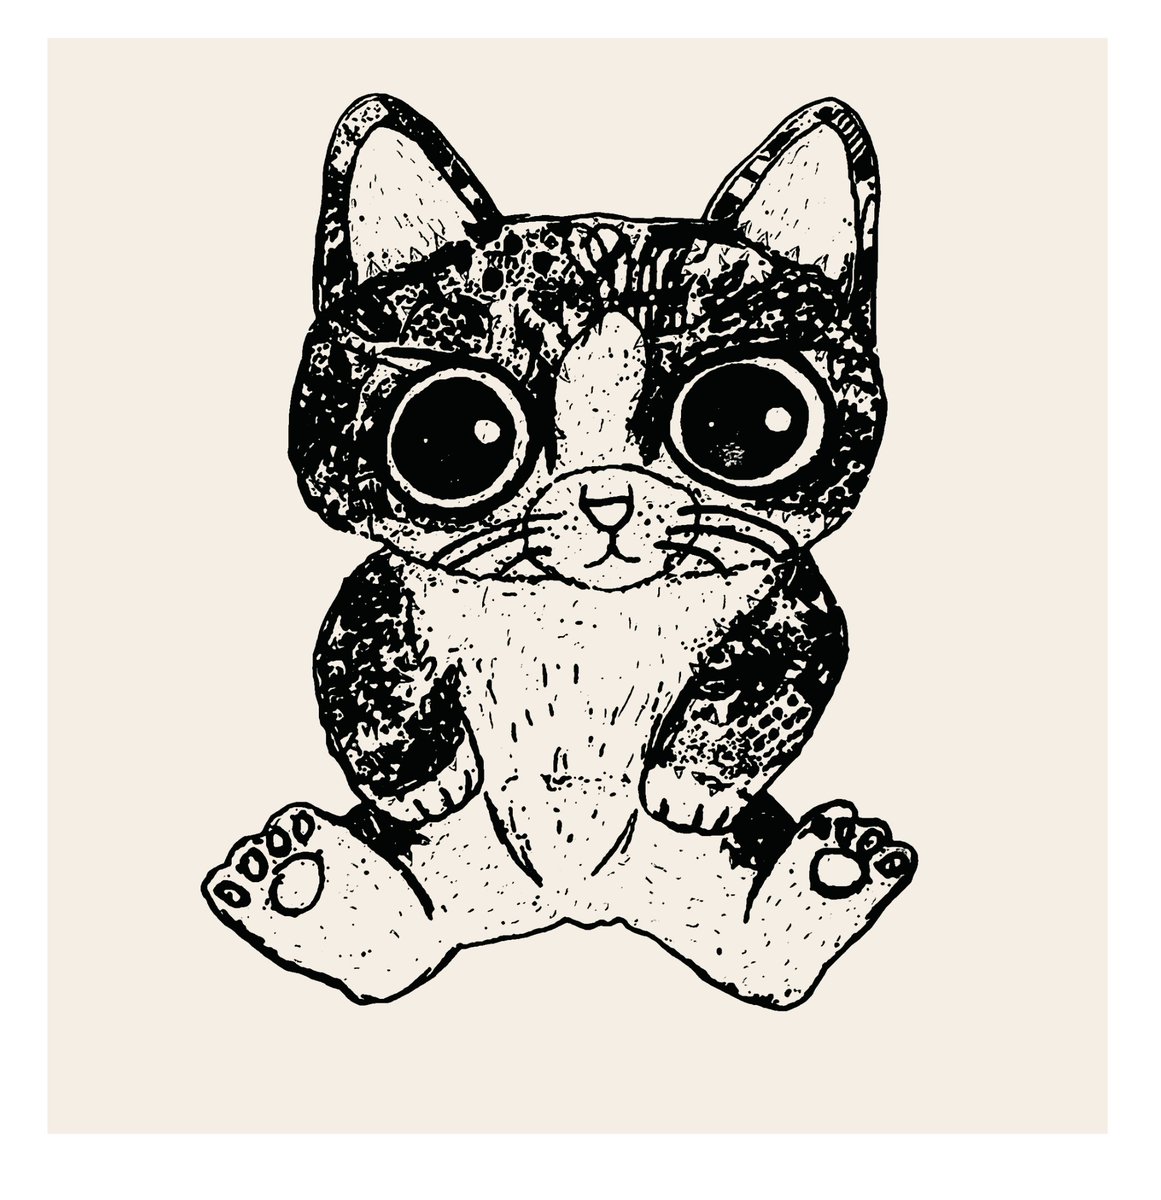 #イラスト好きな人と繋がりたい  #絵描きさんと繋がりたい #イラスト #絵 #下図 #銅版画からシルクスクリーンへ
#ぬいぐるみみたいな猫ちゃん
title「僕は猫です。」 